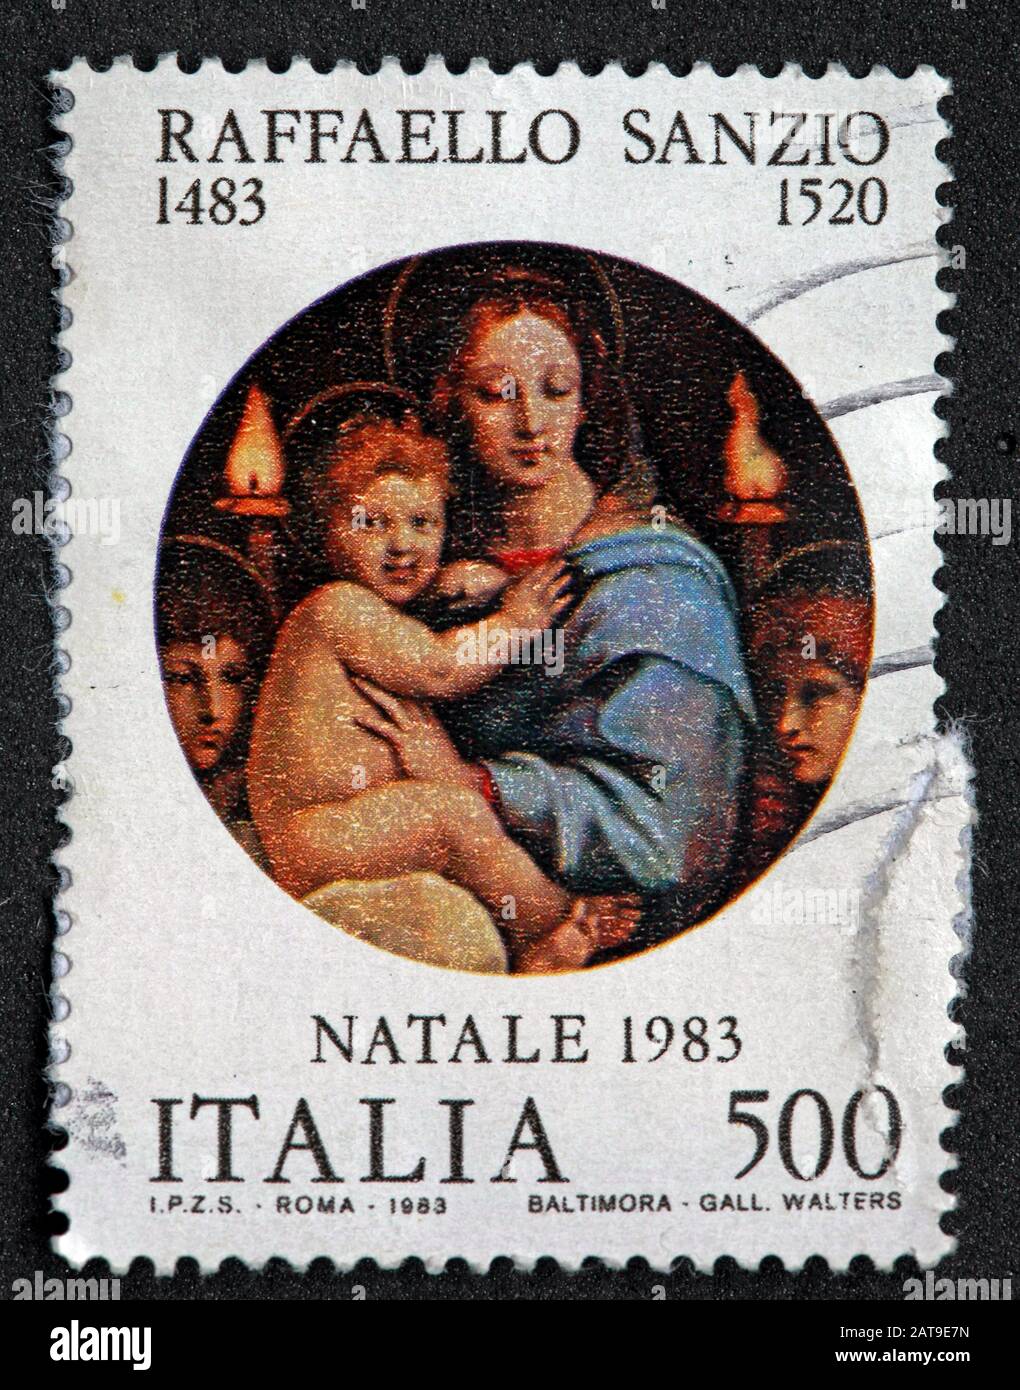 Francobollo italiano, poste Italia usato e affrancato, Italia 500lire Raffaello Sanzio 1483-1520 Natale 1983 - Roma - Baltimora Foto Stock